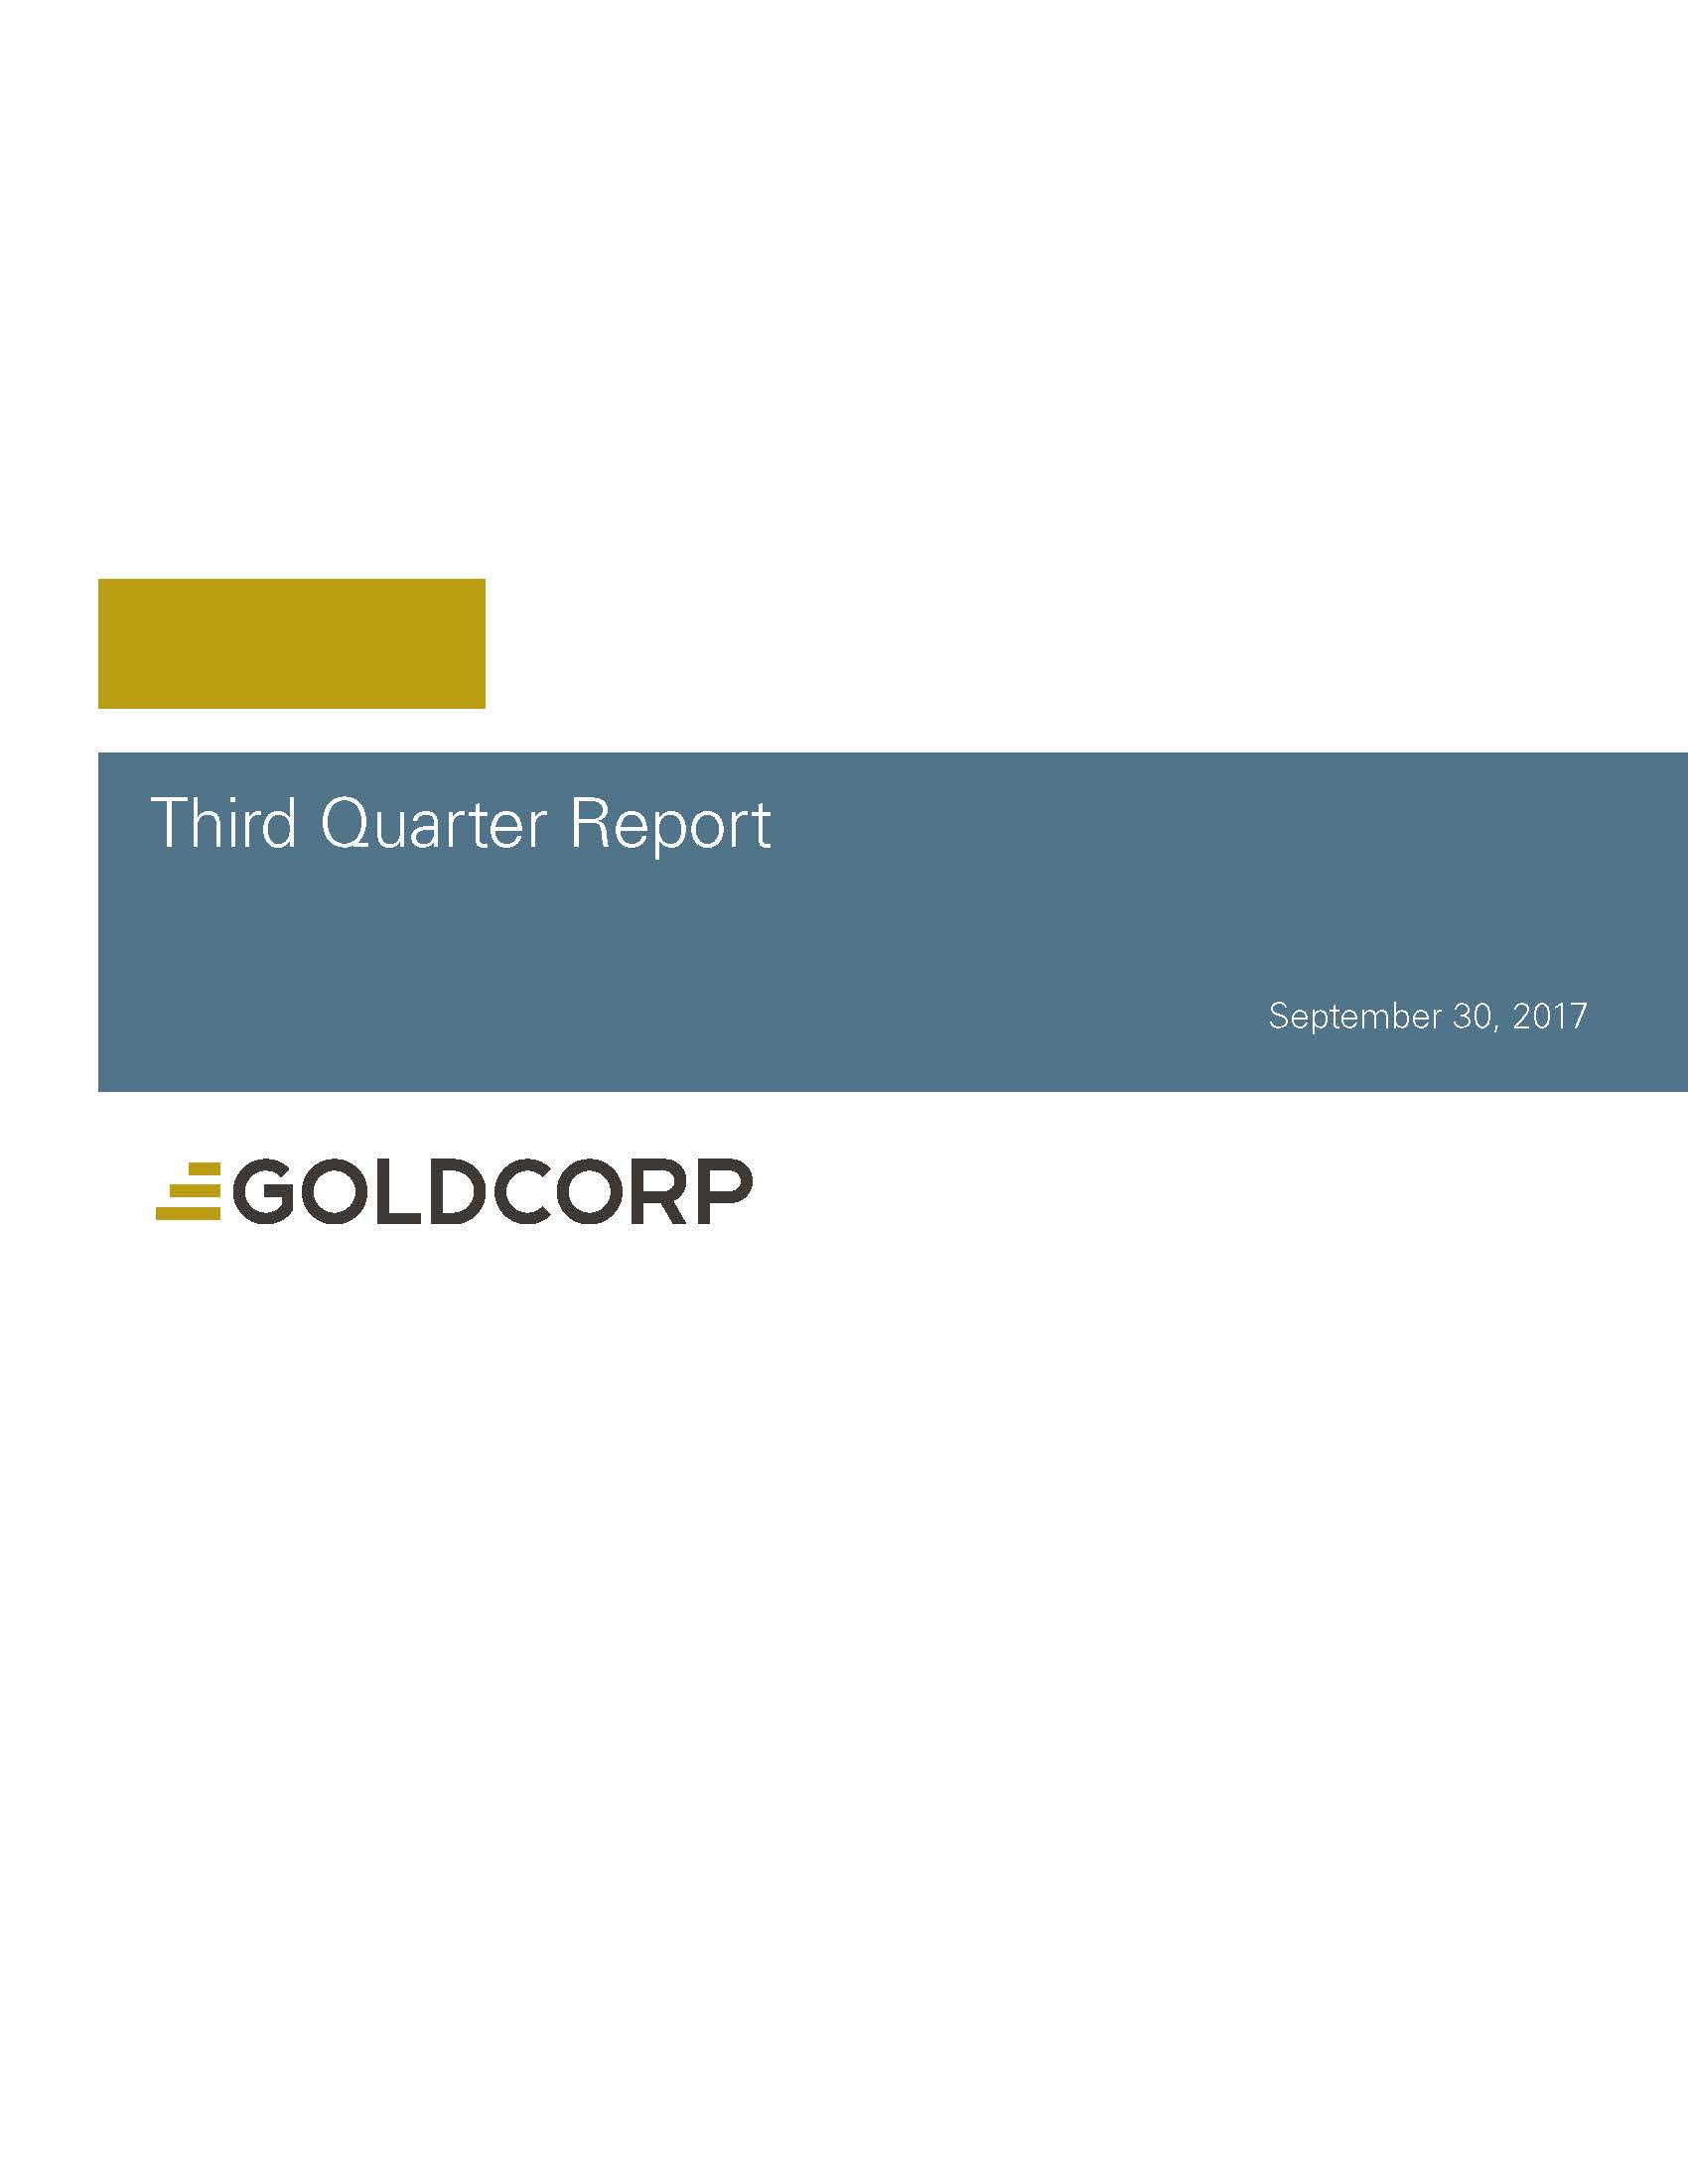 goldcorp2017q3covera01.jpg